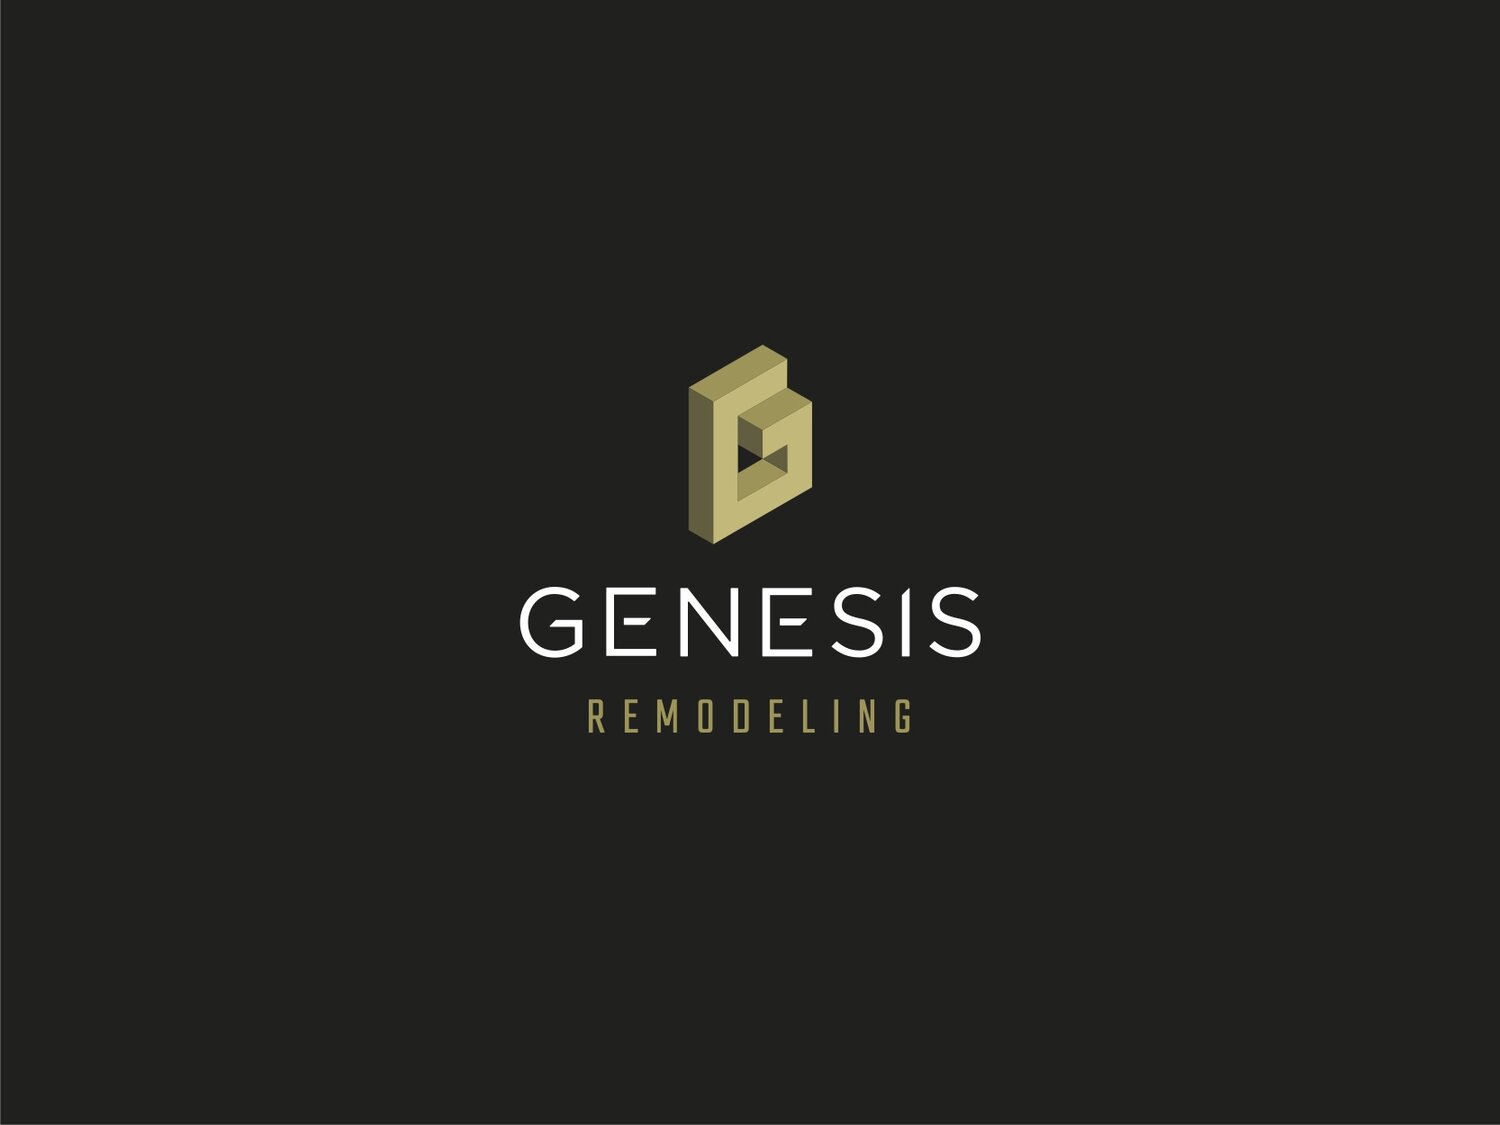 Genesis Remodeling